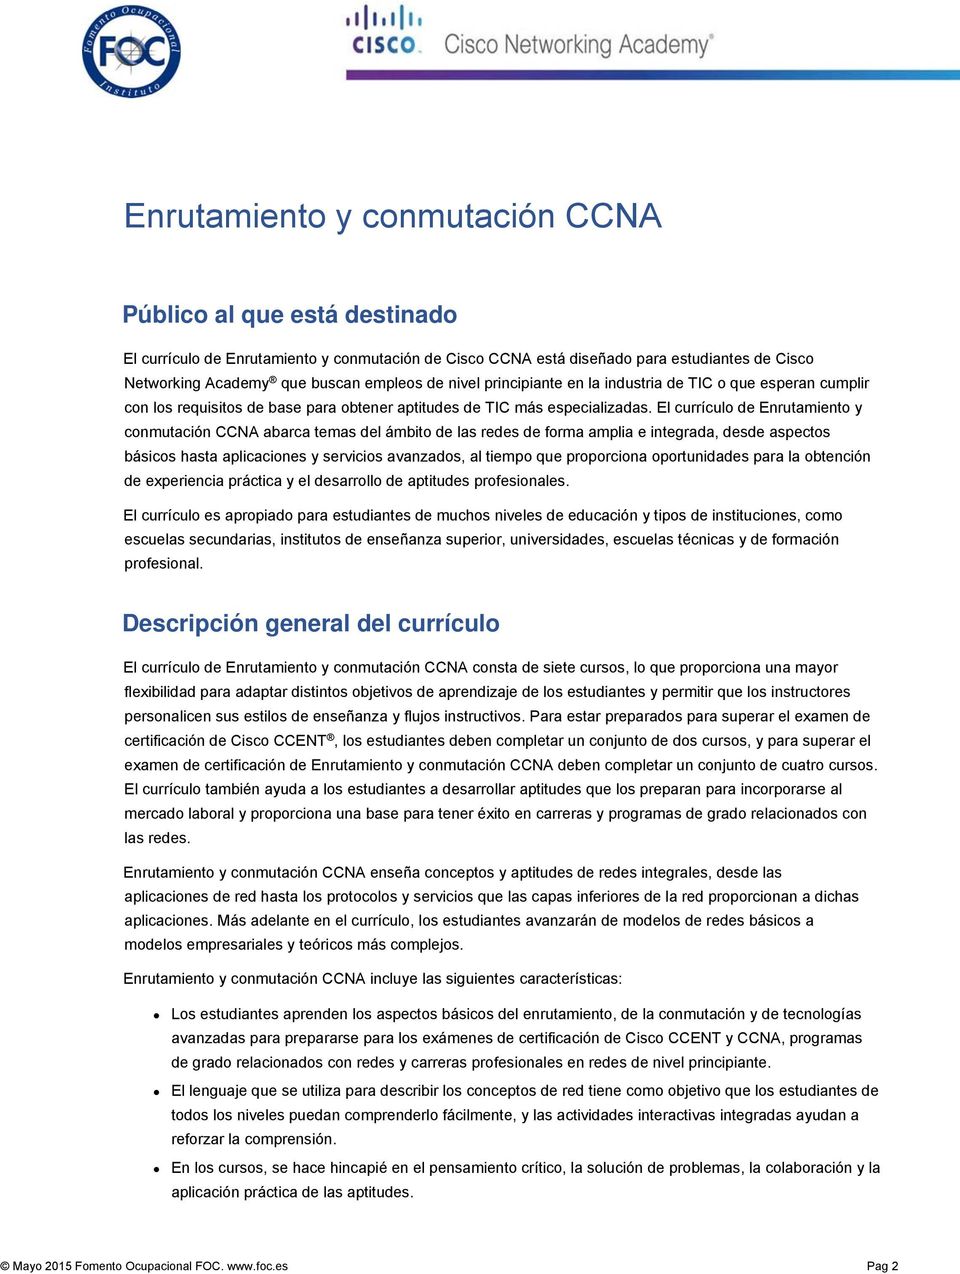 El currículo de Enrutamiento y conmutación CCNA abarca temas del ámbito de las redes de forma amplia e integrada, desde aspectos básicos hasta aplicaciones y servicios avanzados, al tiempo que